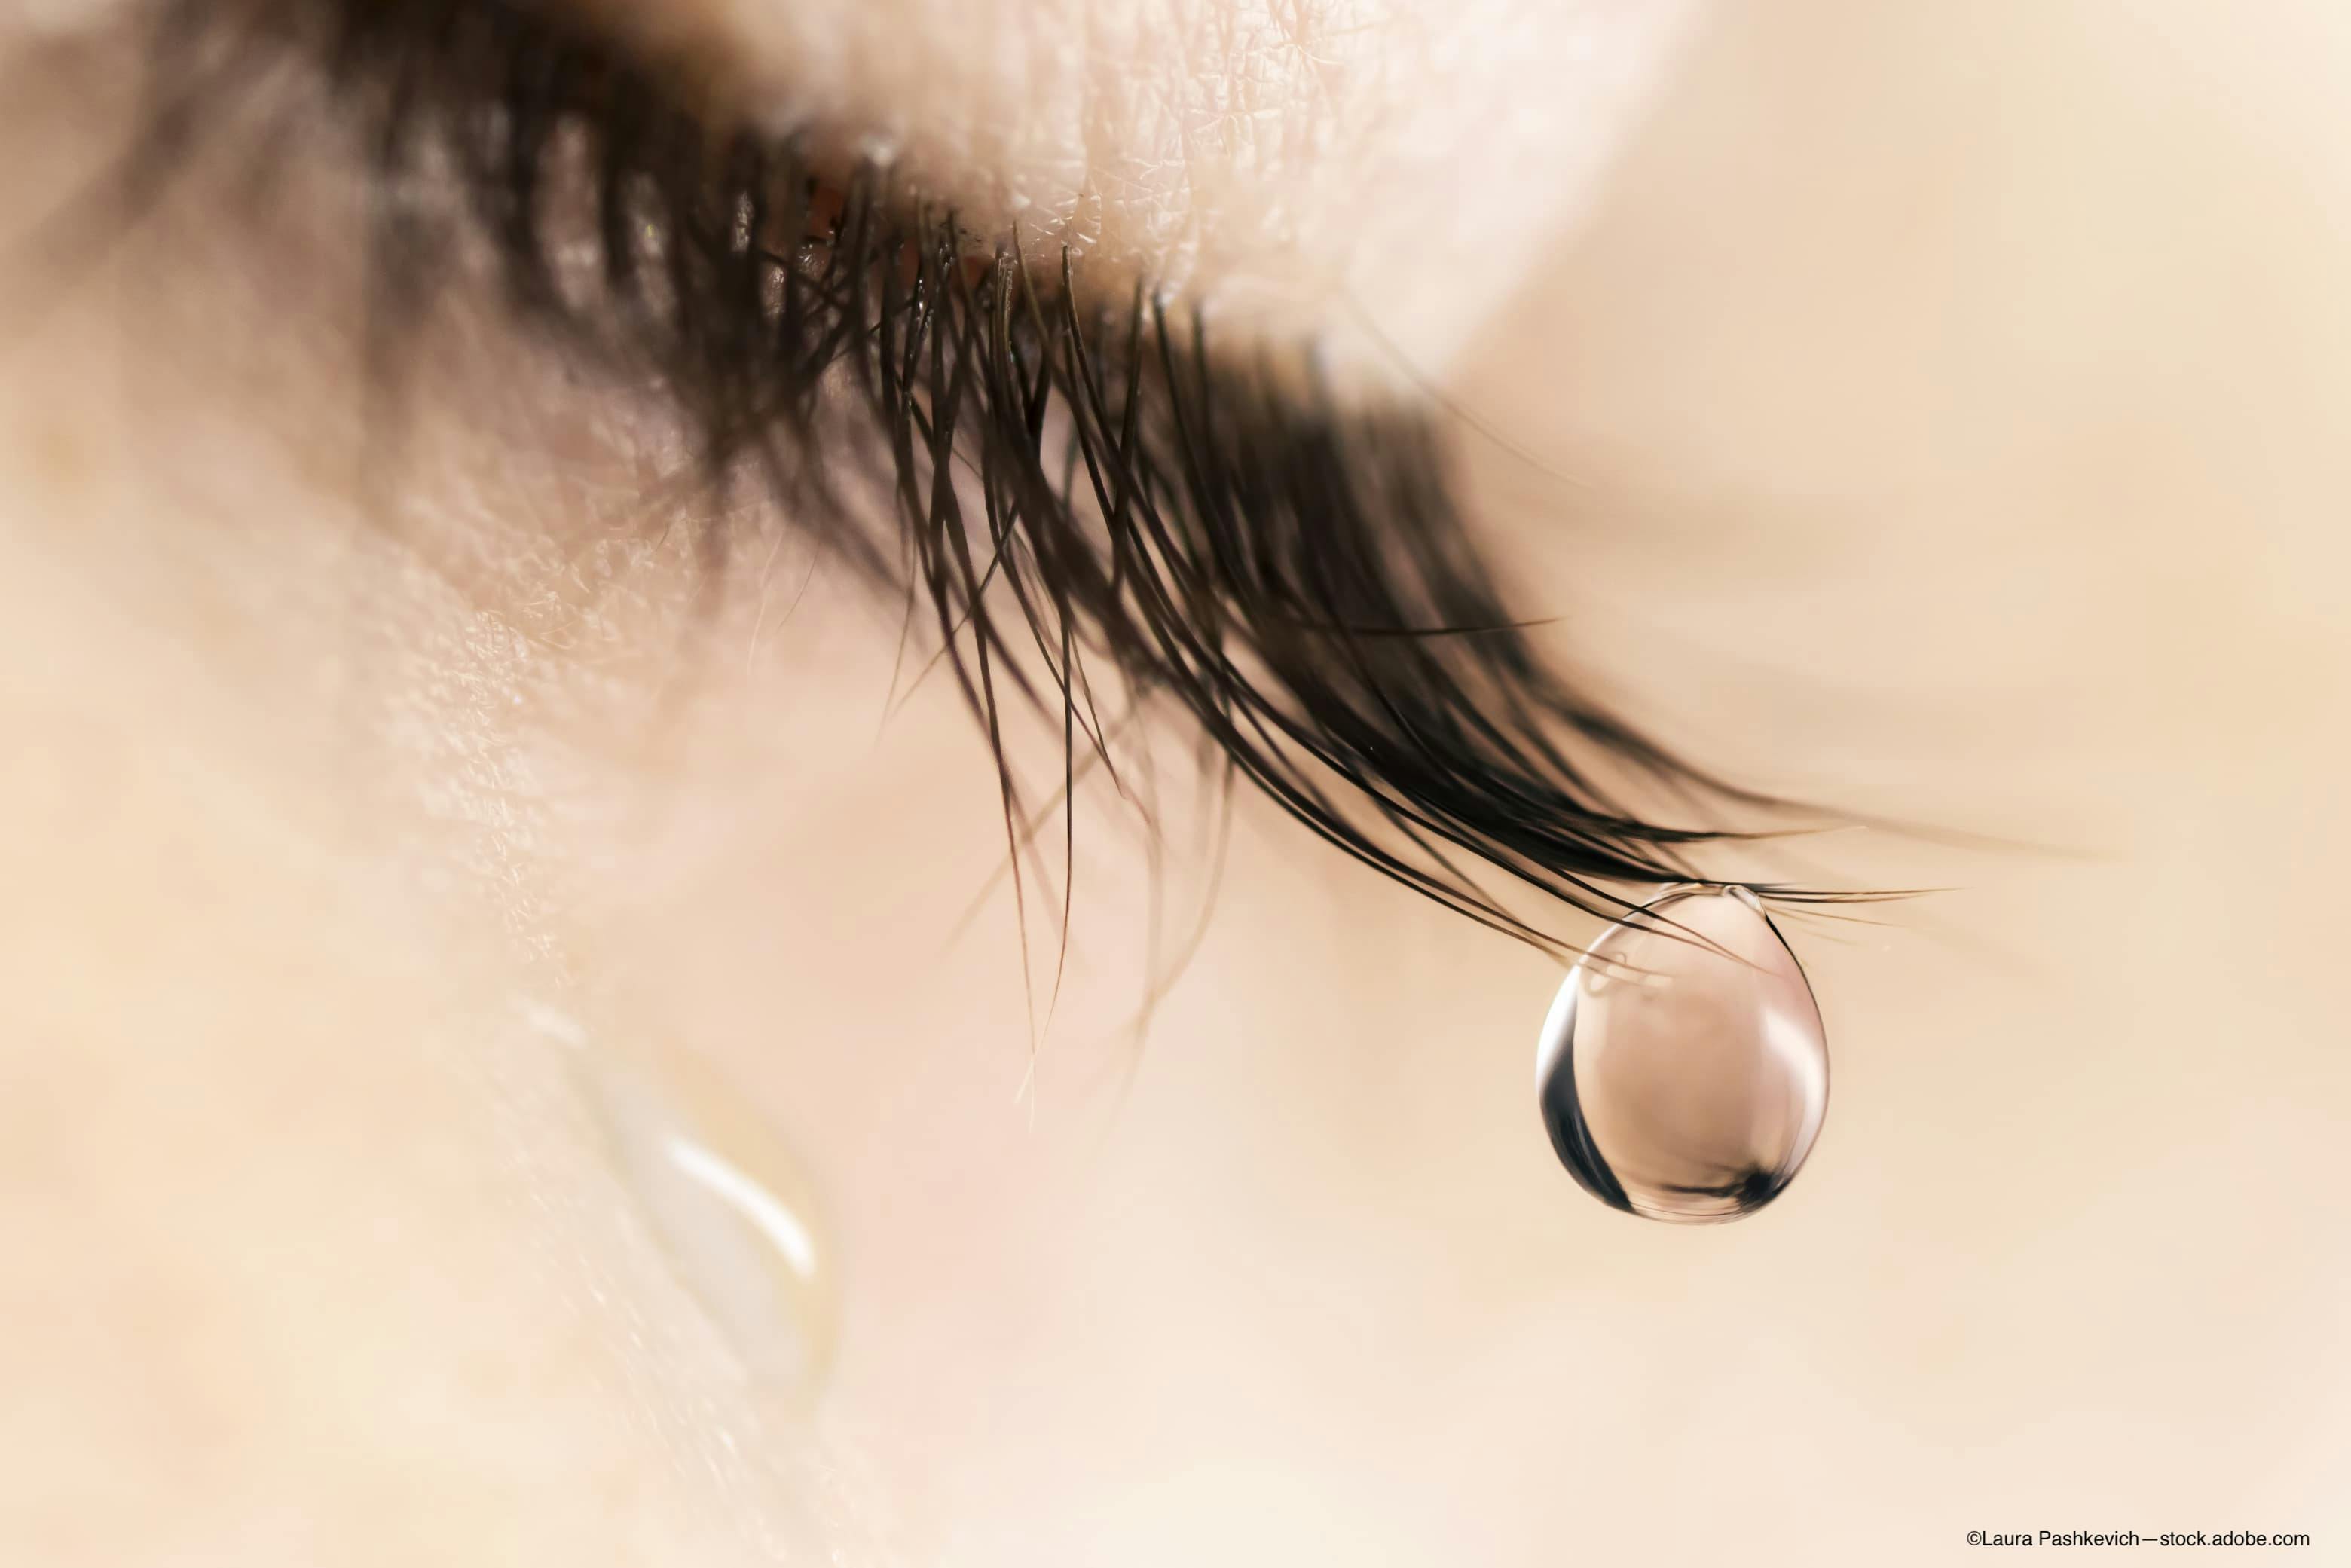 Austrian study targets dry eye disease in postmenopausal women